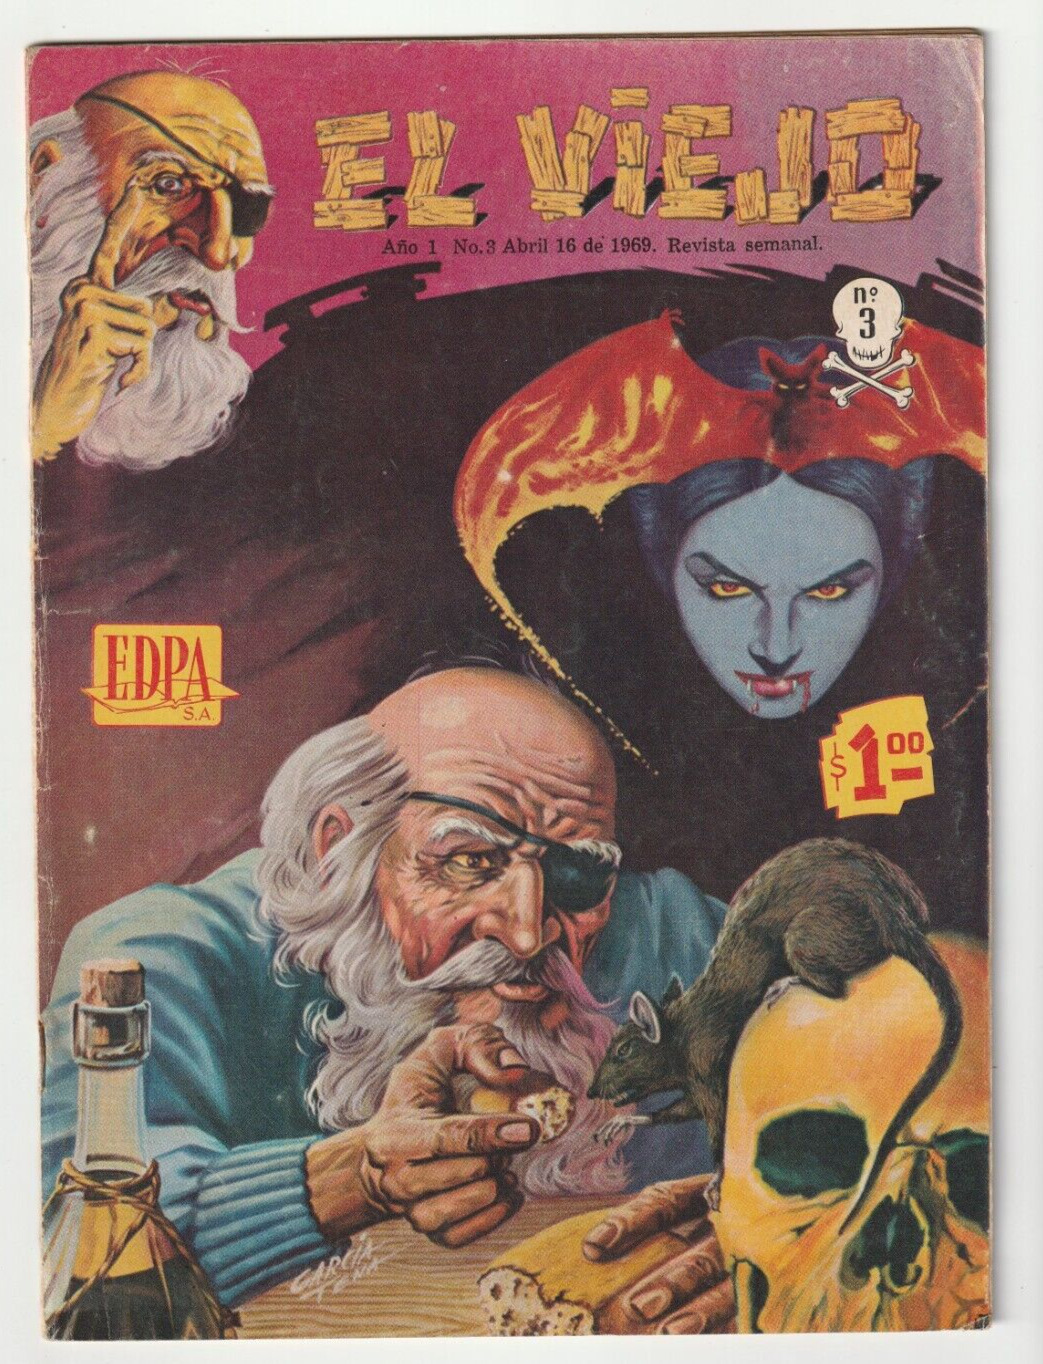 El Viejo #3 - Silver Age Mexican Horror - Garcia Tena Cover - Mexico 1969